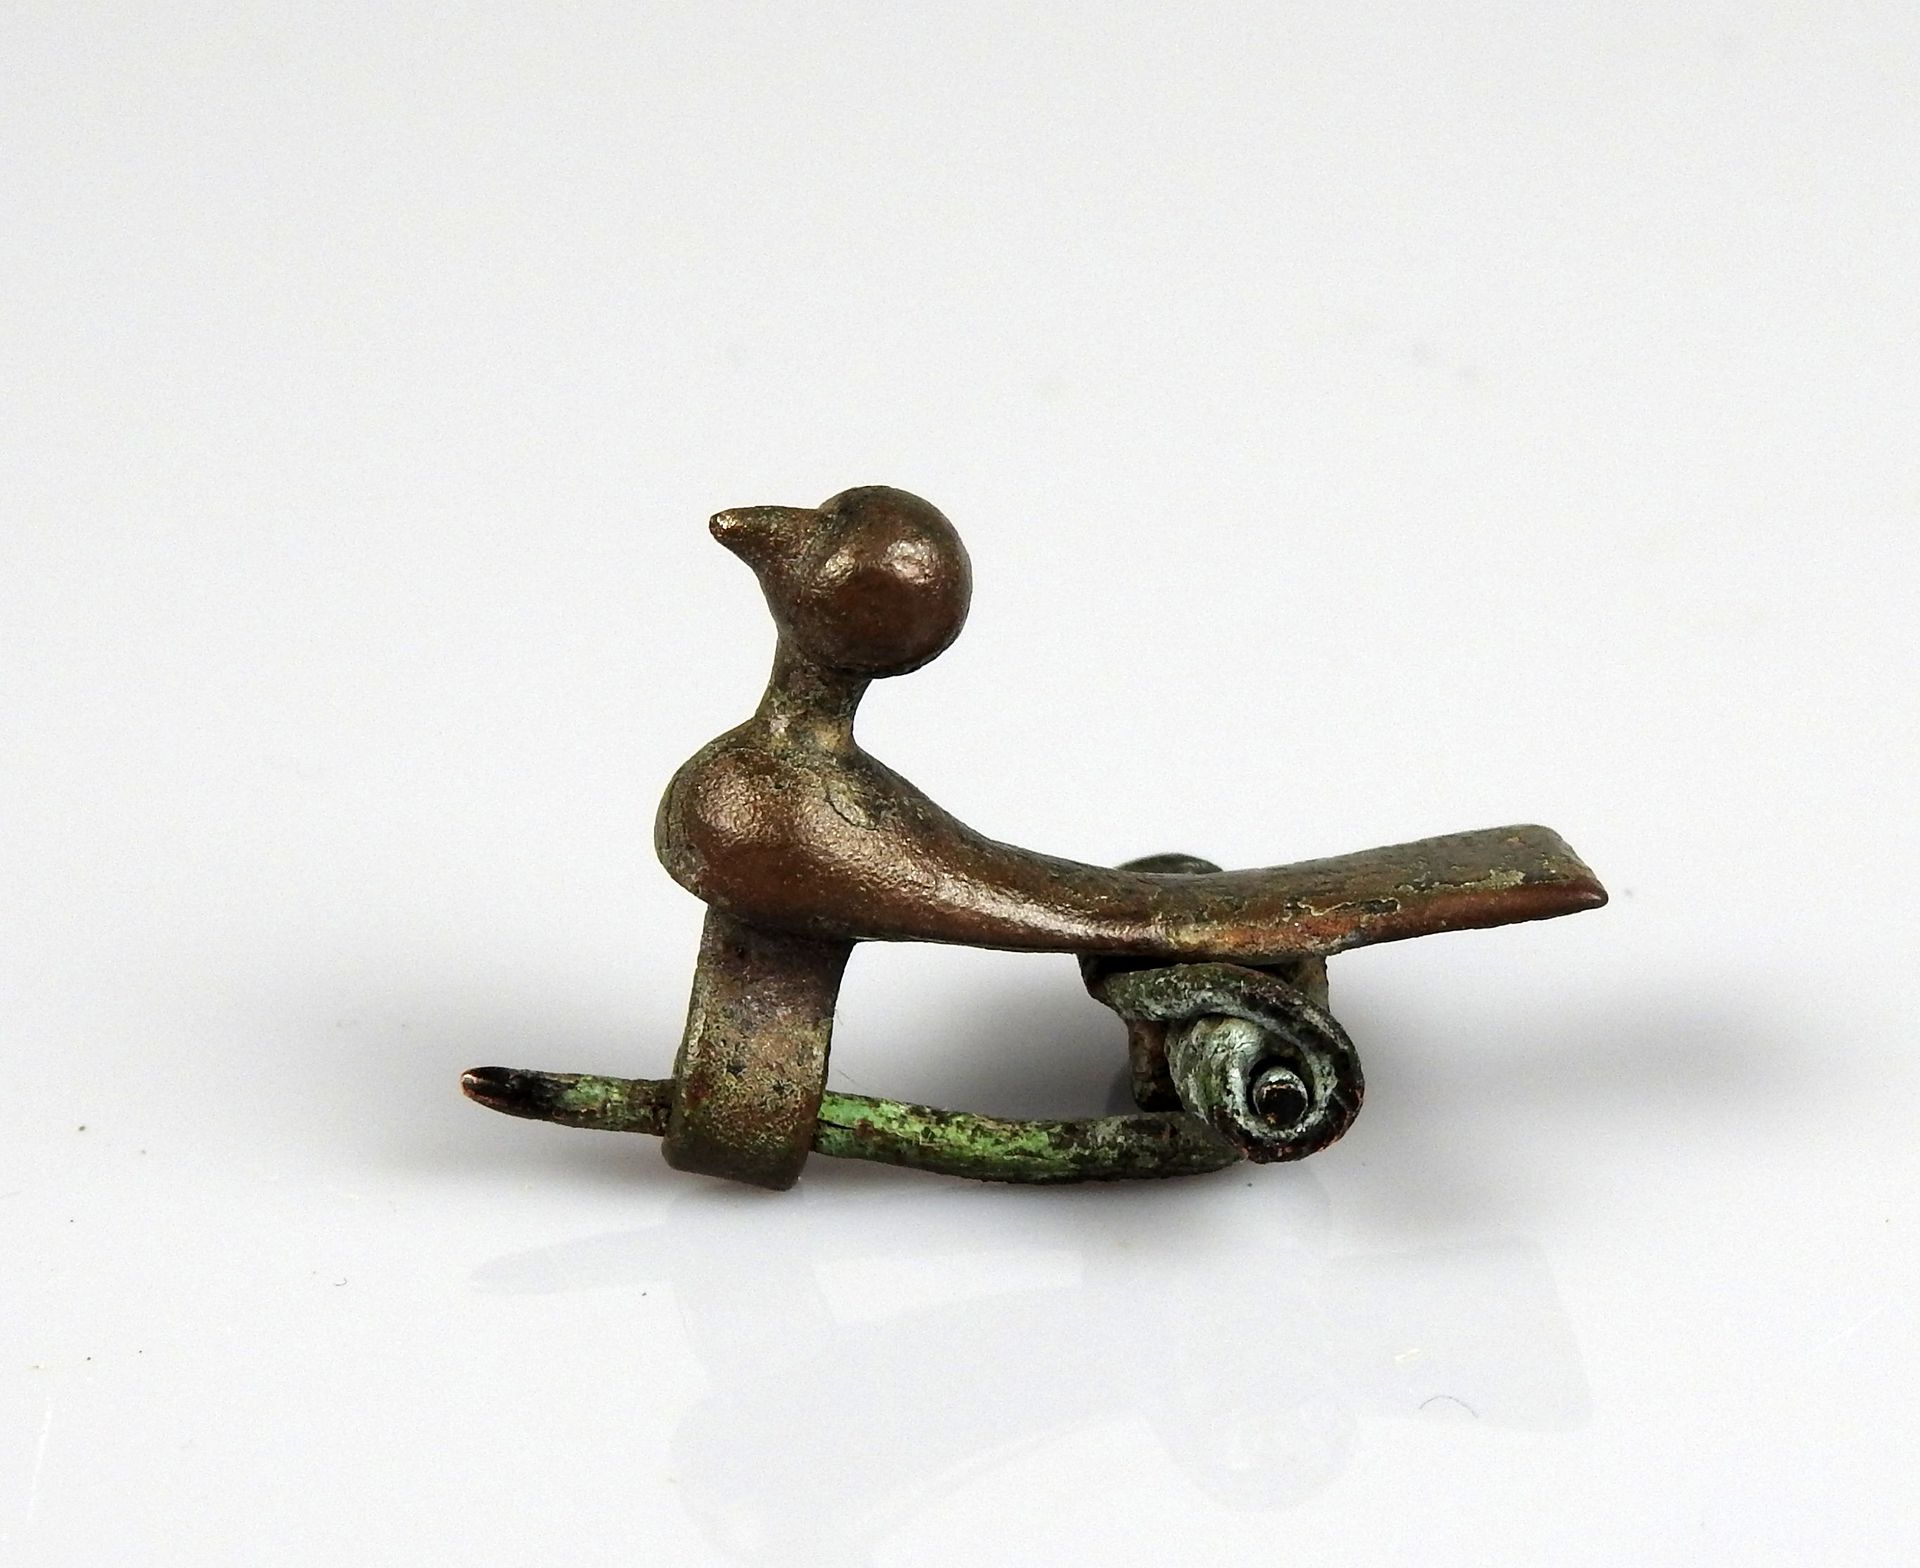 Null 表现鸟类造型的弹簧式腓骨

青铜3.5厘米

罗马时期 东欧